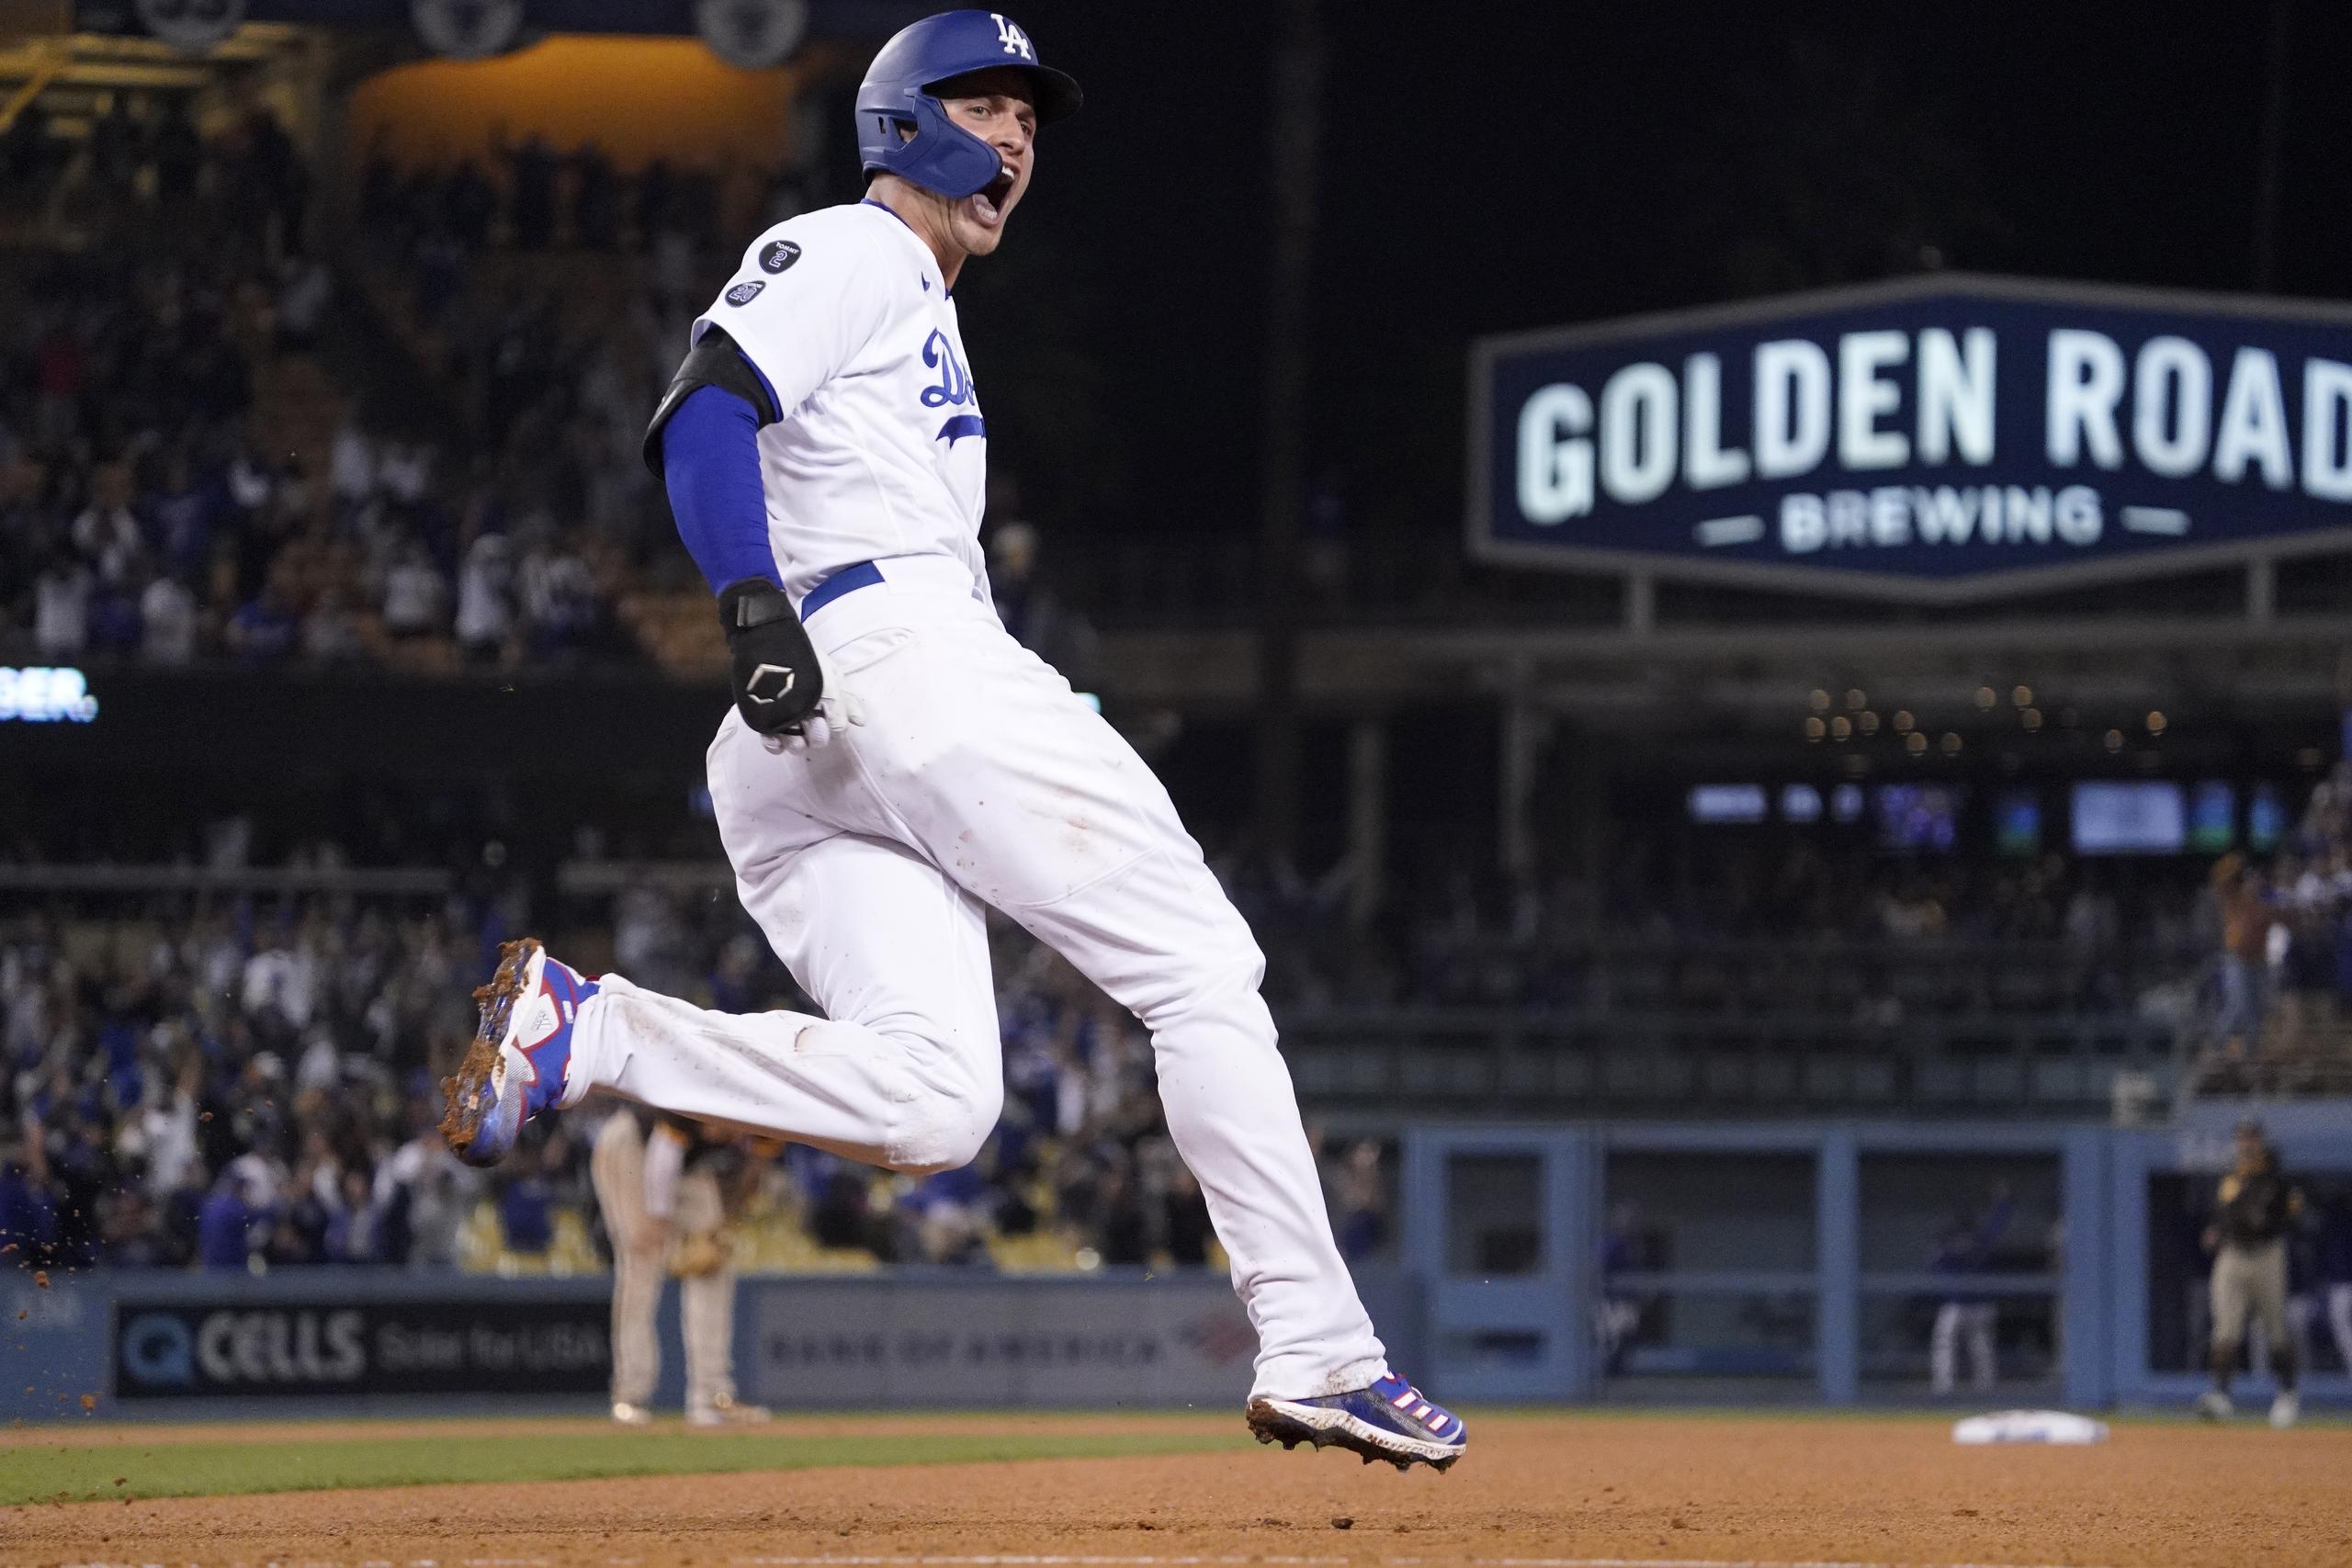 El jugador de los Dodgers de Los Ángeles Corey Seager celebra en primera base tras sacudir un jonrón de dos carreras en el octavo inning del juego de la MLB que enfrentó a su equipo con los Padres de San Diego.